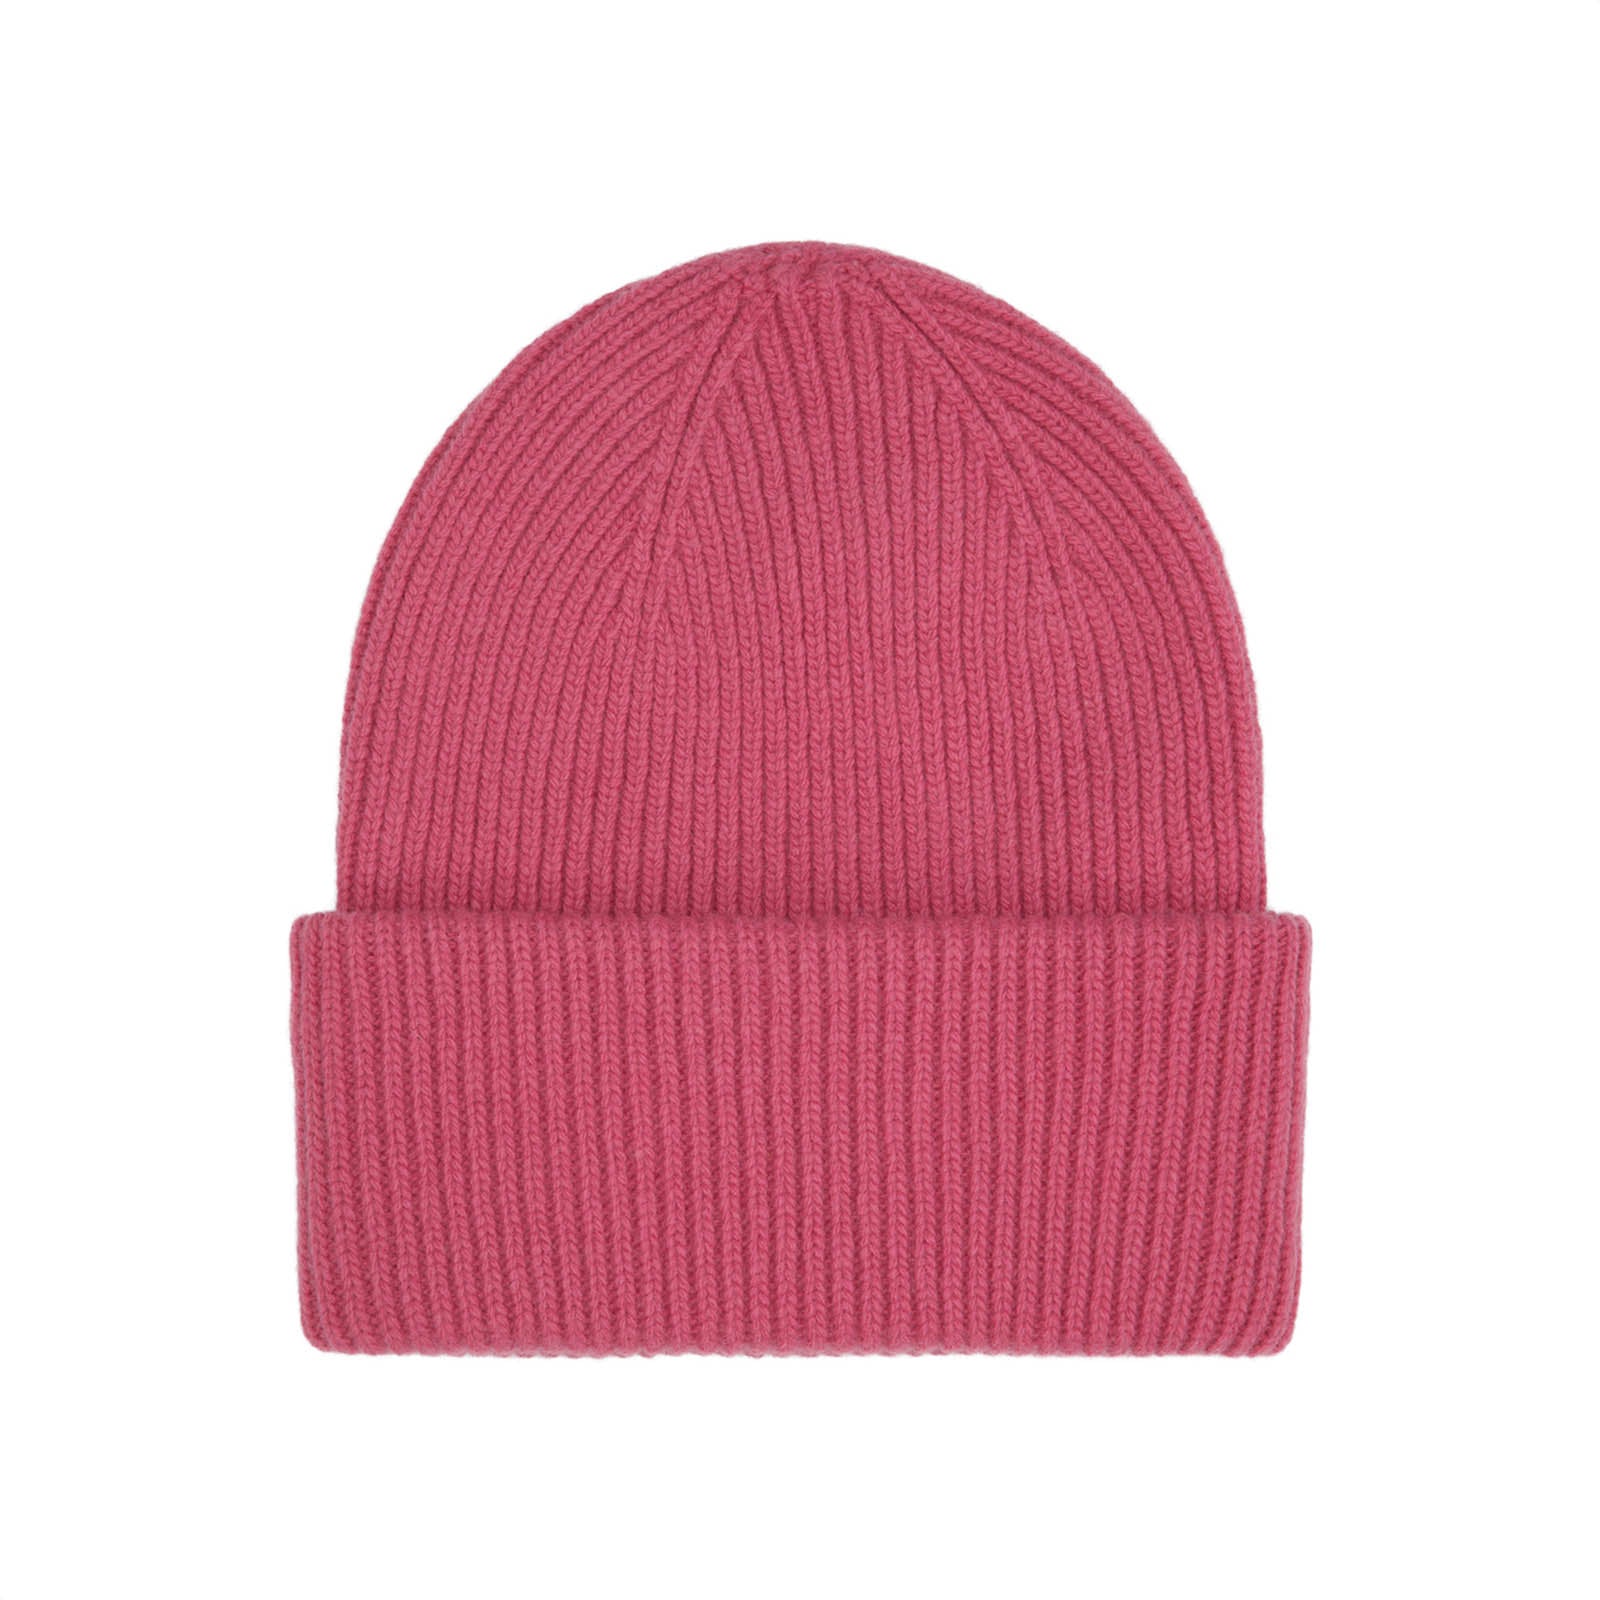 Merino Wool Hat Raspberry Pink